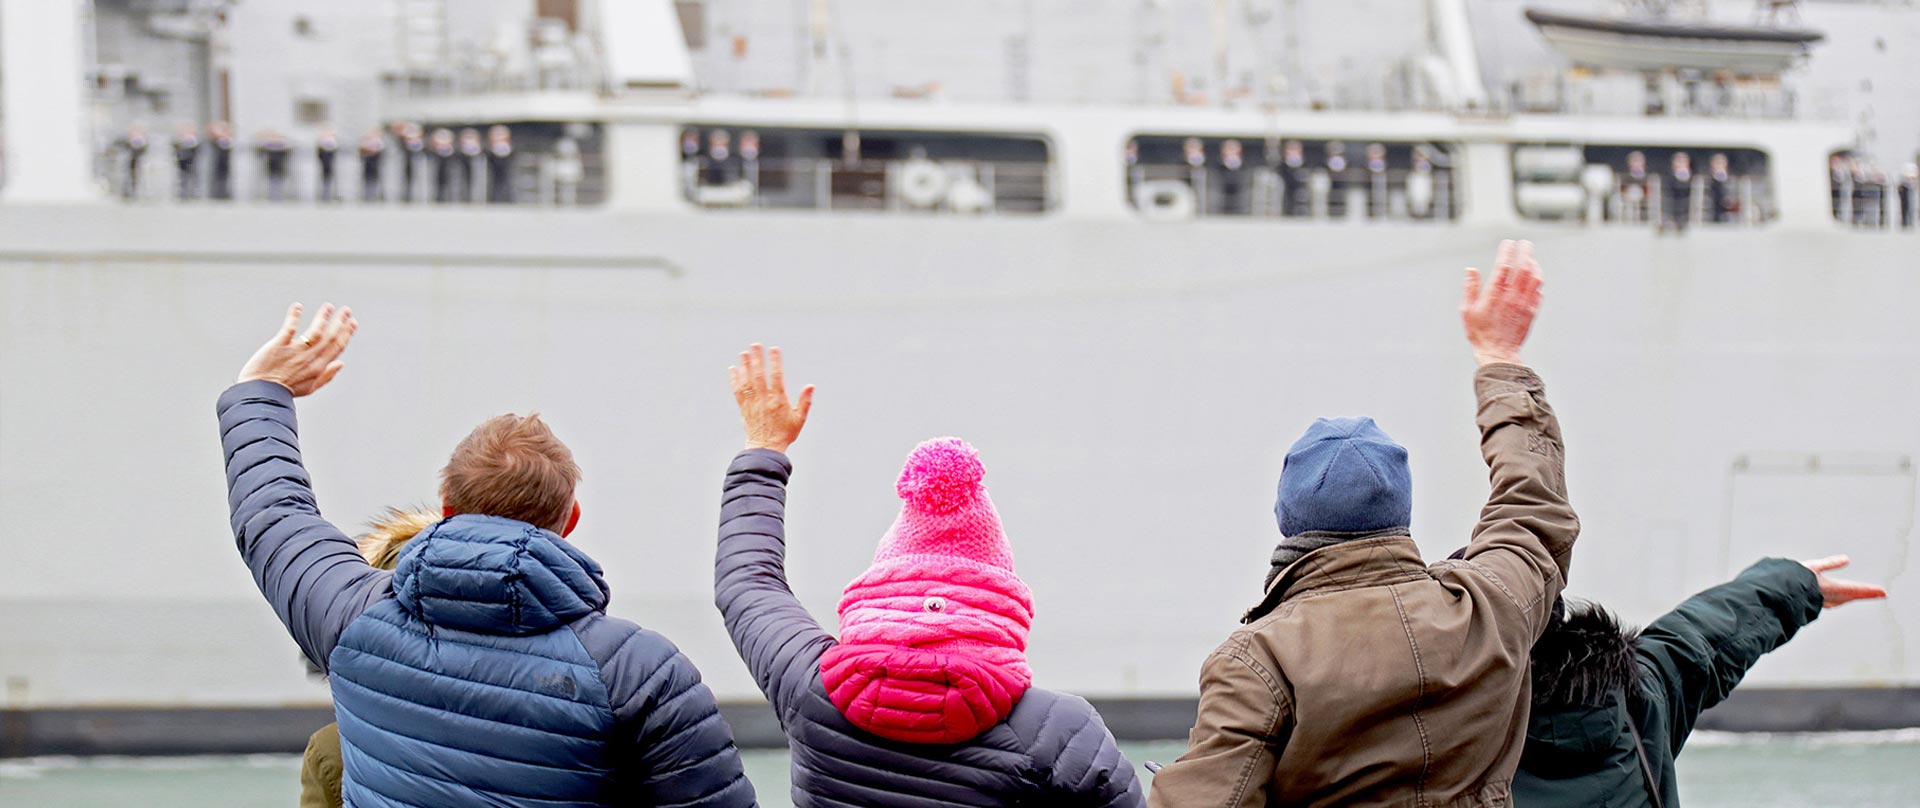 People waving at a leaving ship.